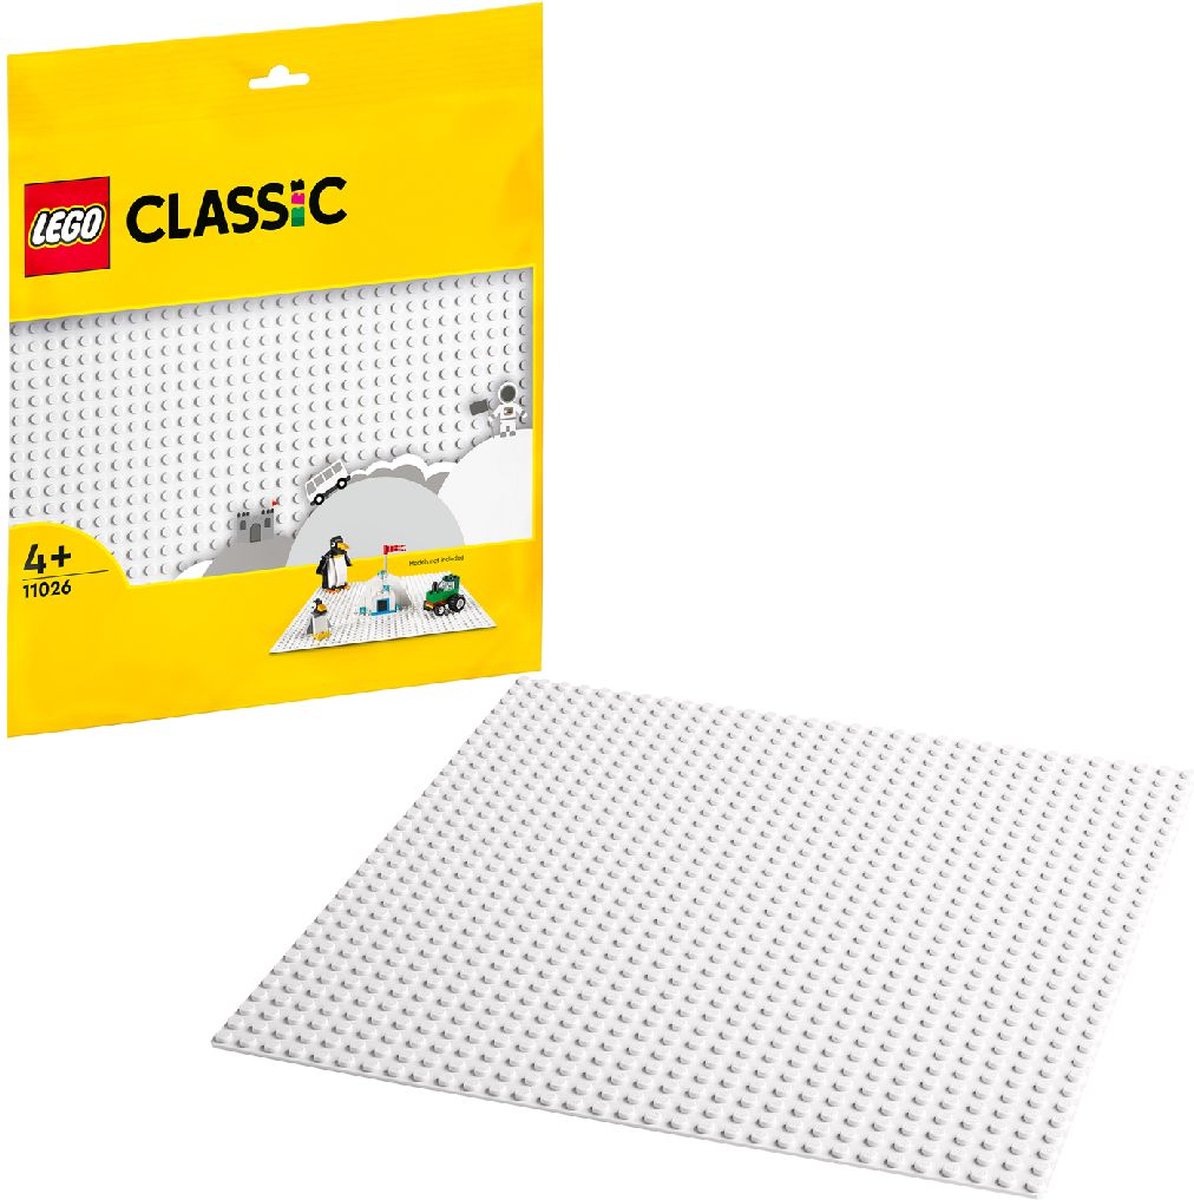 Plaques de construction compatibles avec LEGO - Set complet de 4 pièces -  Vert, Gris